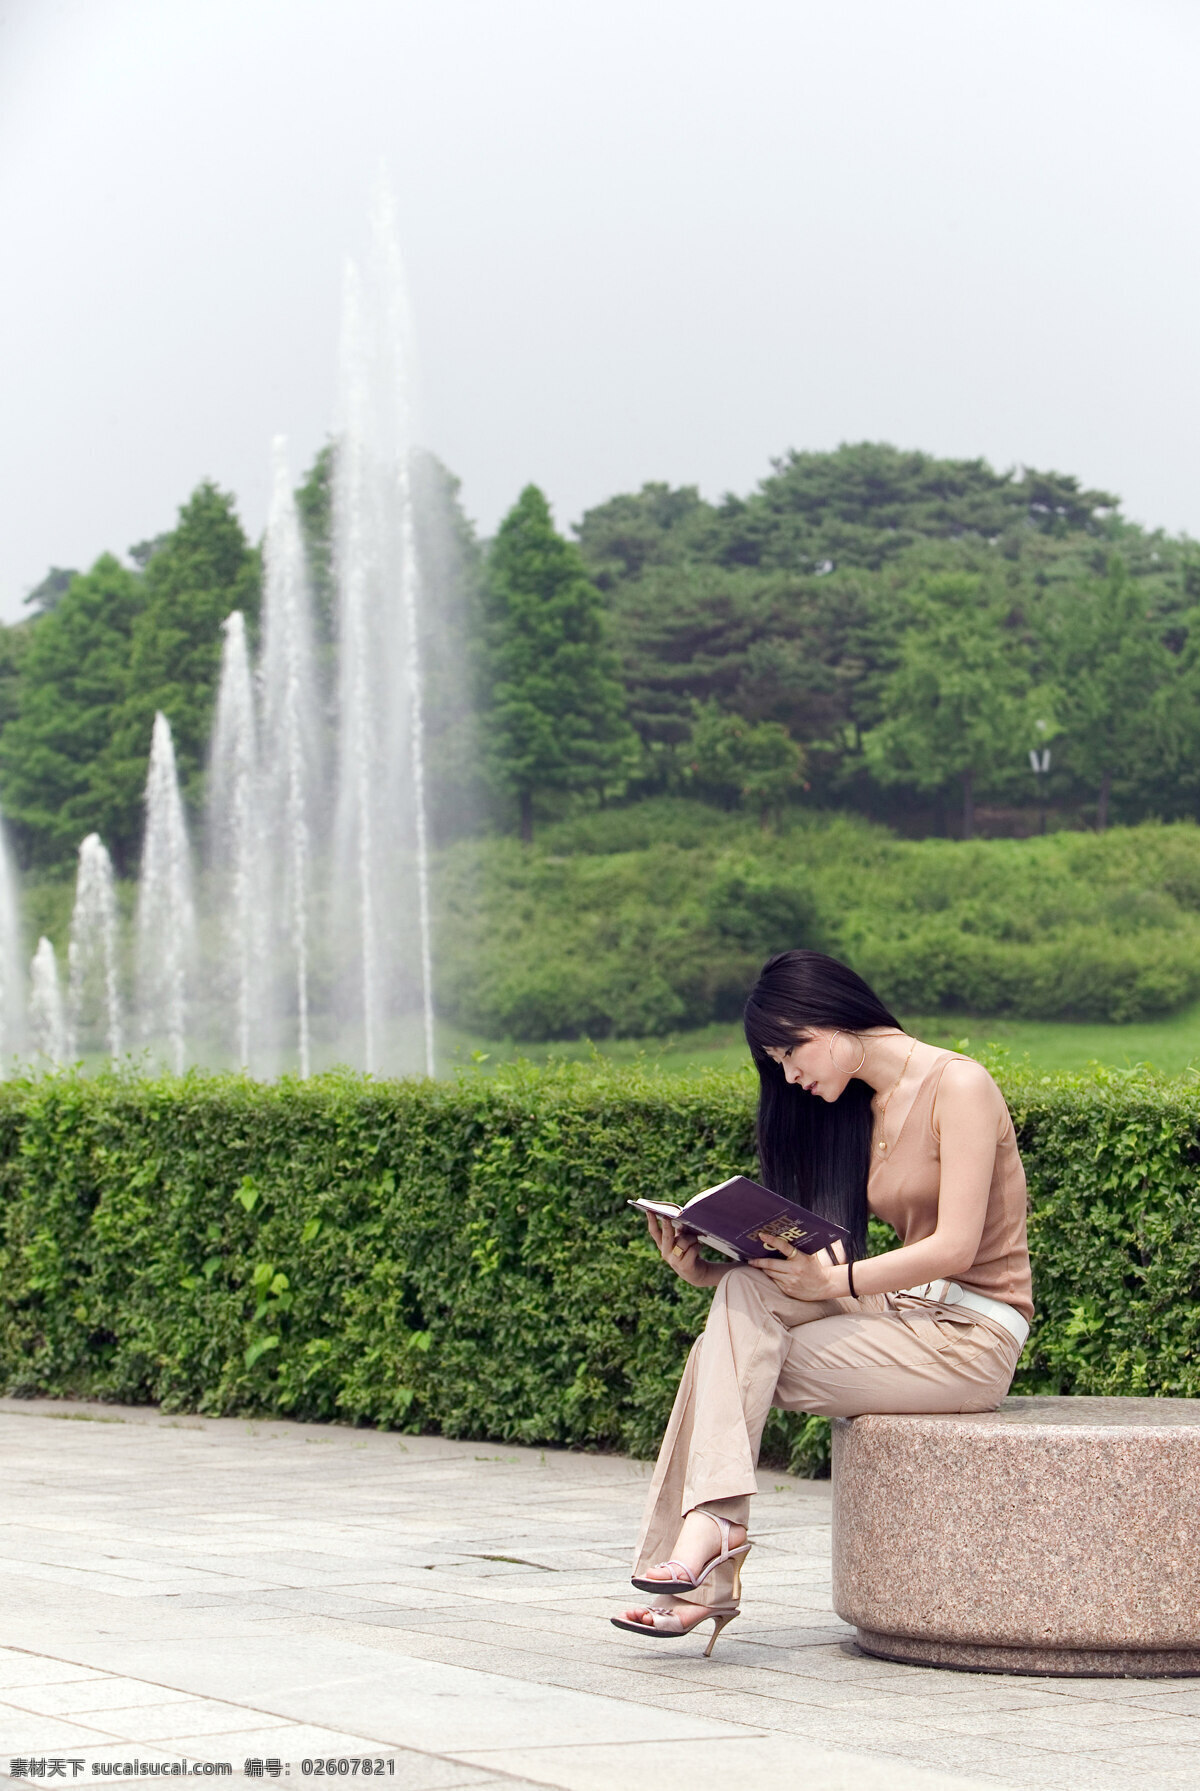 坐在 公园 石头 上 看书 美女图片 女性 美女 休闲时光 生活 享受 户外 坐着 石凳 树木 森林 喷泉 生活人物 人物图片